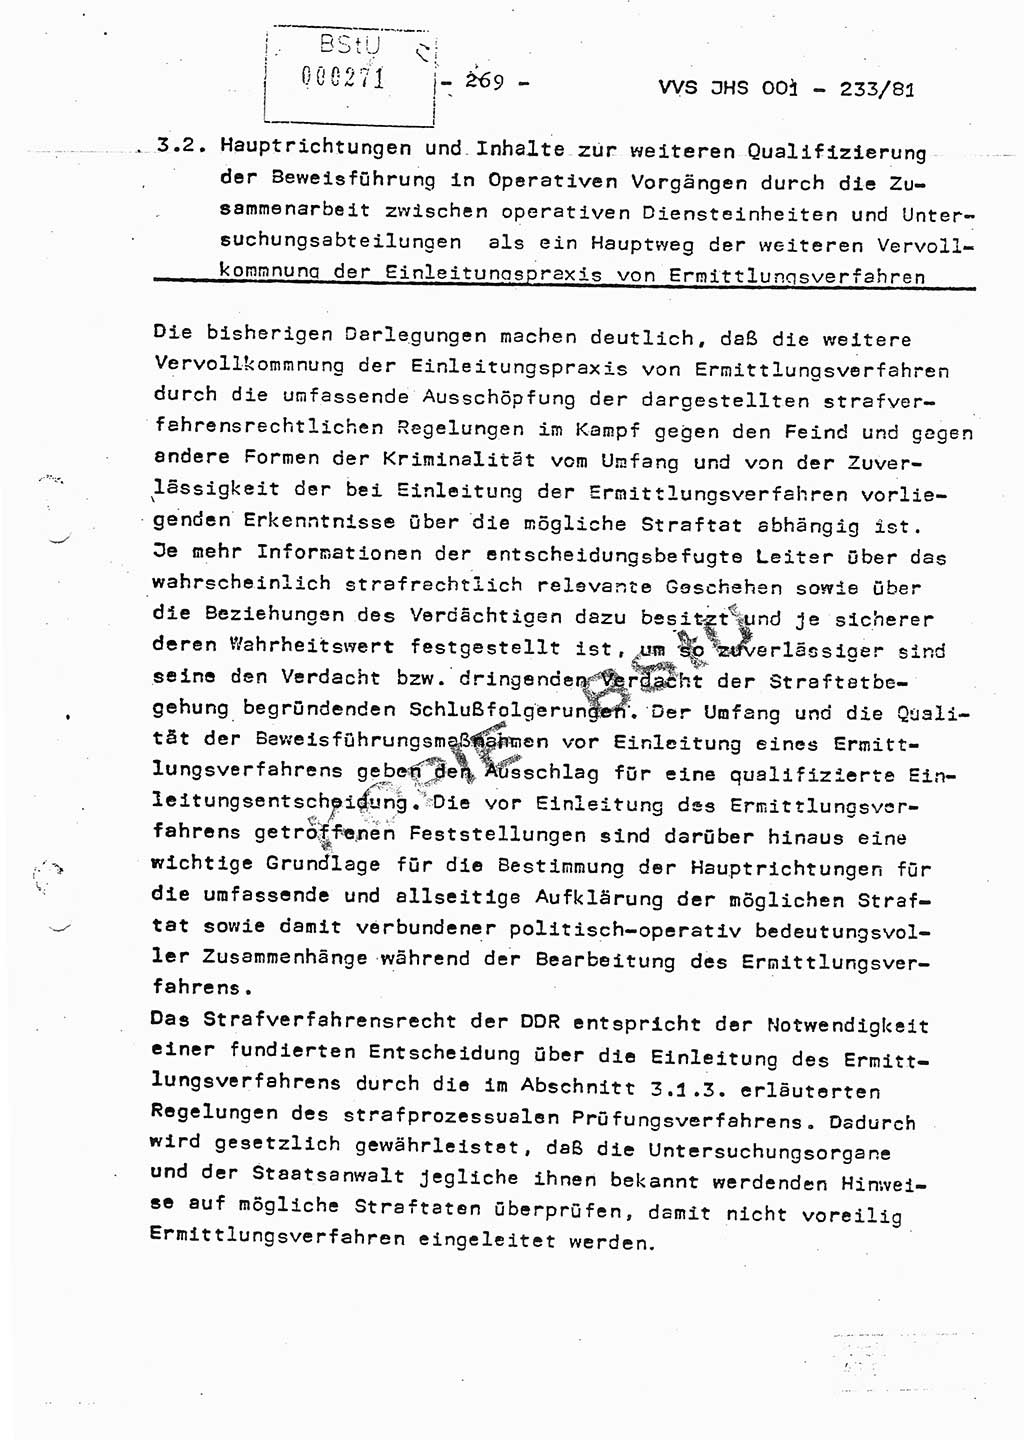 Dissertation Oberstleutnant Horst Zank (JHS), Oberstleutnant Dr. Karl-Heinz Knoblauch (JHS), Oberstleutnant Gustav-Adolf Kowalewski (HA Ⅸ), Oberstleutnant Wolfgang Plötner (HA Ⅸ), Ministerium für Staatssicherheit (MfS) [Deutsche Demokratische Republik (DDR)], Juristische Hochschule (JHS), Vertrauliche Verschlußsache (VVS) o001-233/81, Potsdam 1981, Blatt 269 (Diss. MfS DDR JHS VVS o001-233/81 1981, Bl. 269)